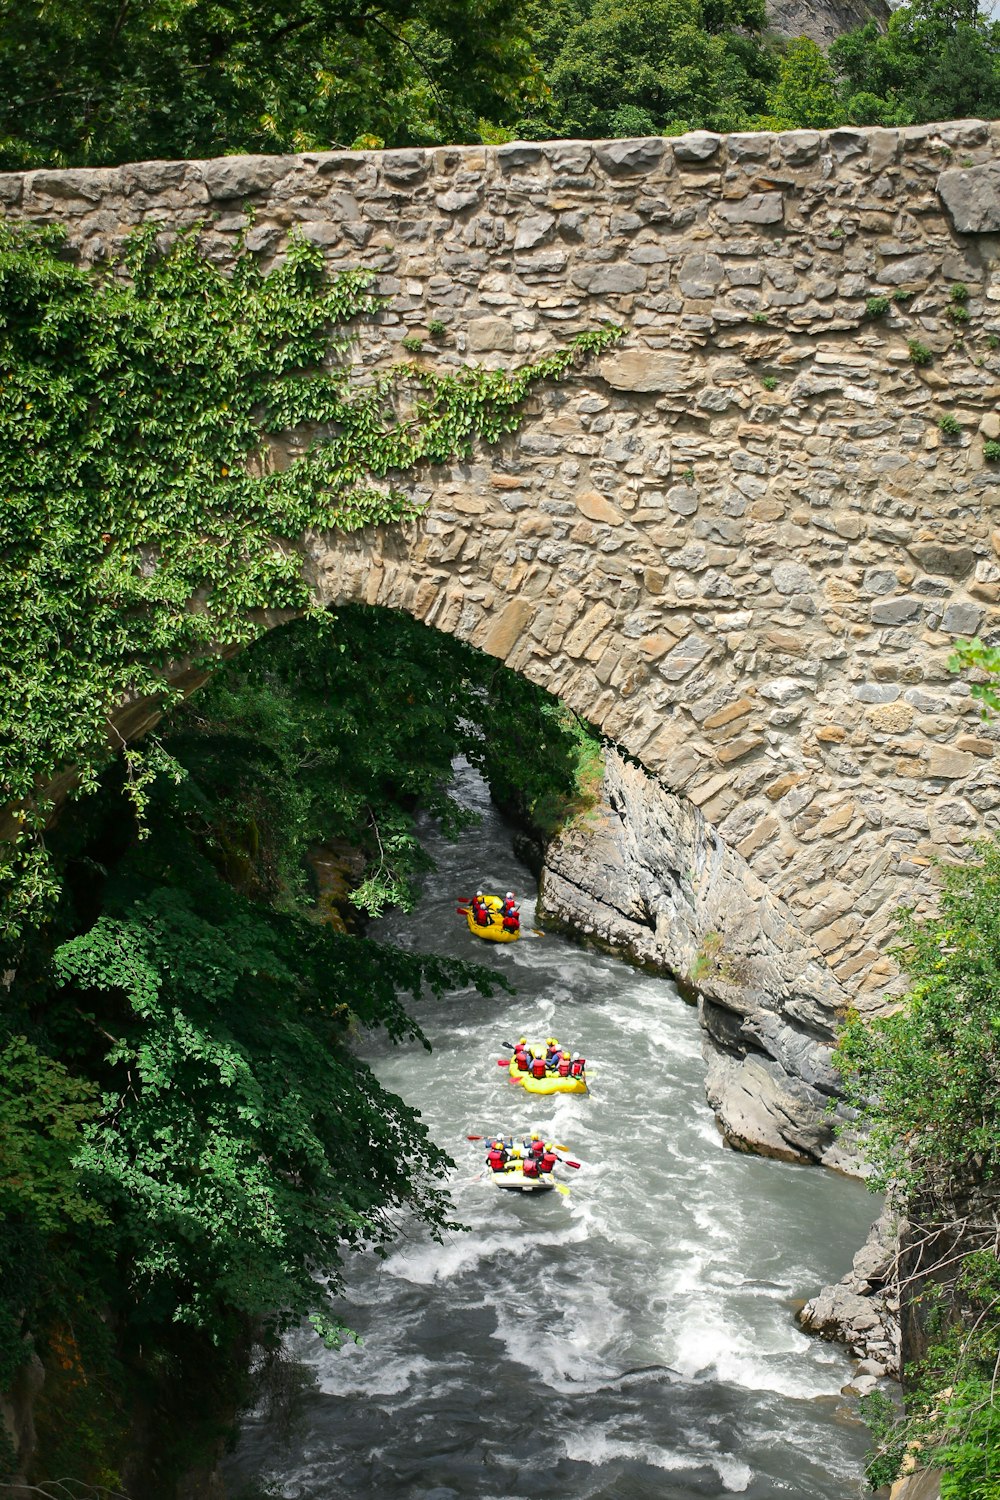 Eine Gruppe von Menschen auf Flößen, die unter einer Steinbrücke hindurchfahren